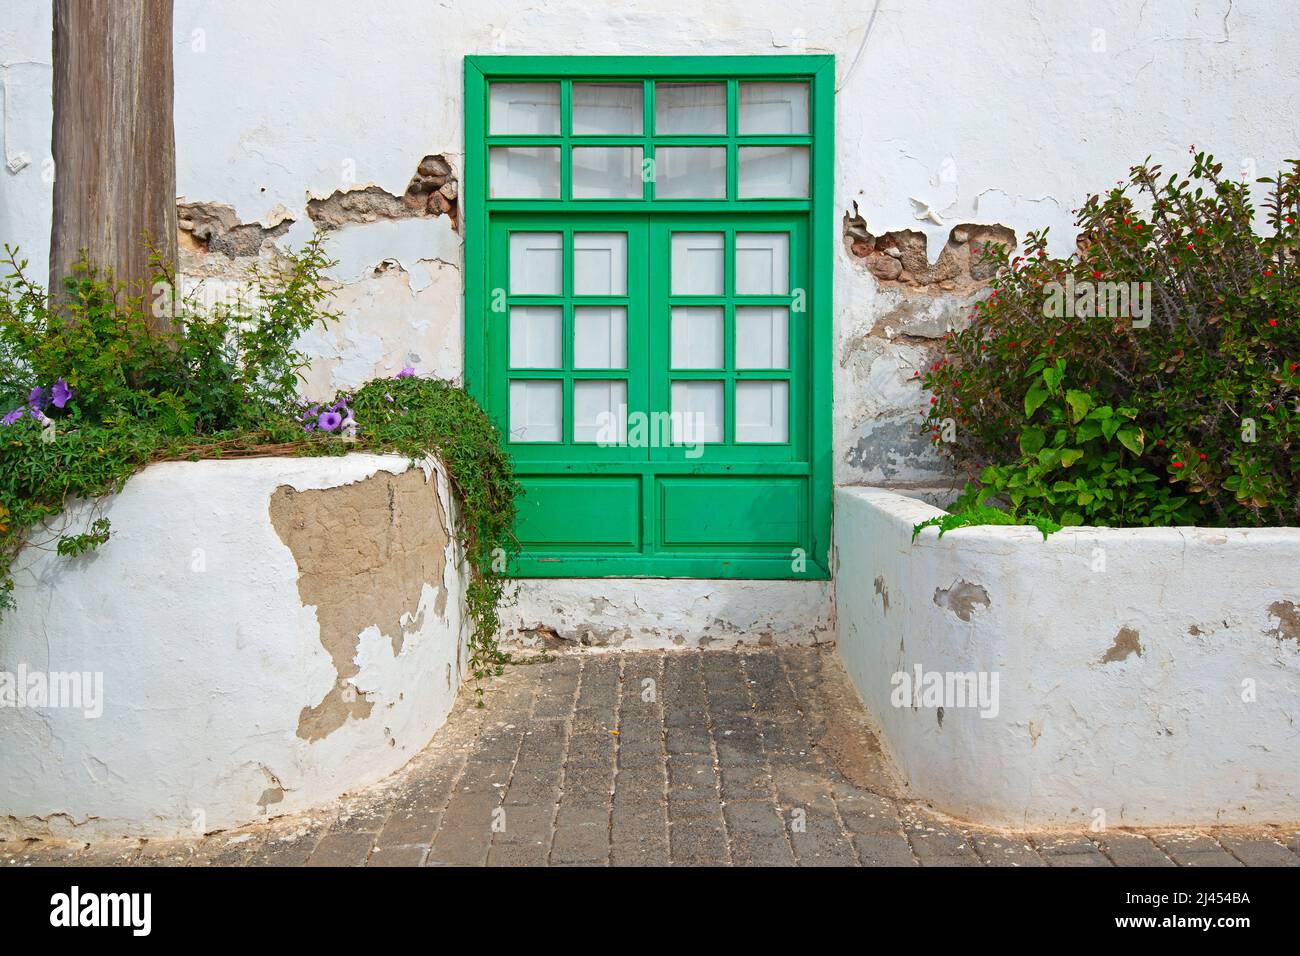 Typisches altes Weißes Haus mit farbigen Türen und Fenstern, Teguise, ehemalige Hauptszadt der Insel Lanzarote, kanarische Inseln, Kanaren, Spanien Foto Stock